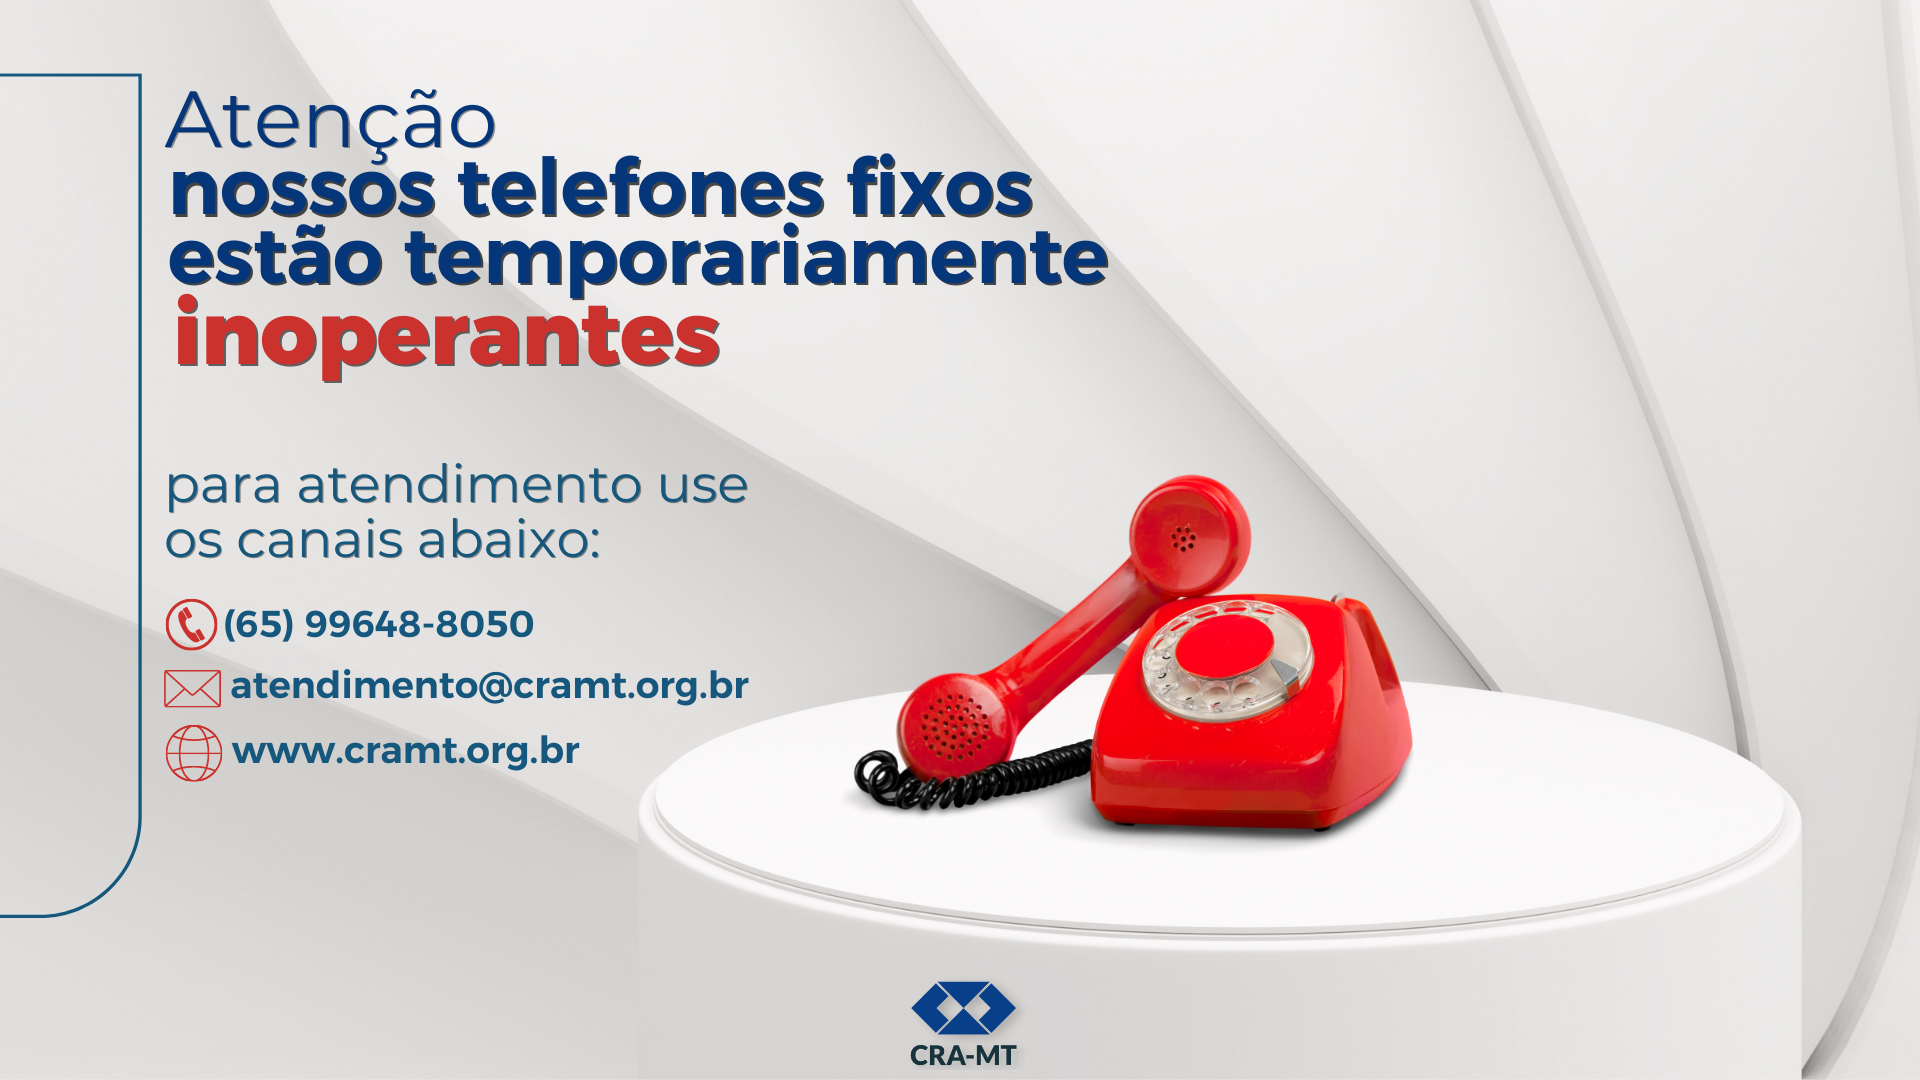 Read more about the article Aviso: Linhas telefônicas do CRA-MT inoperantes